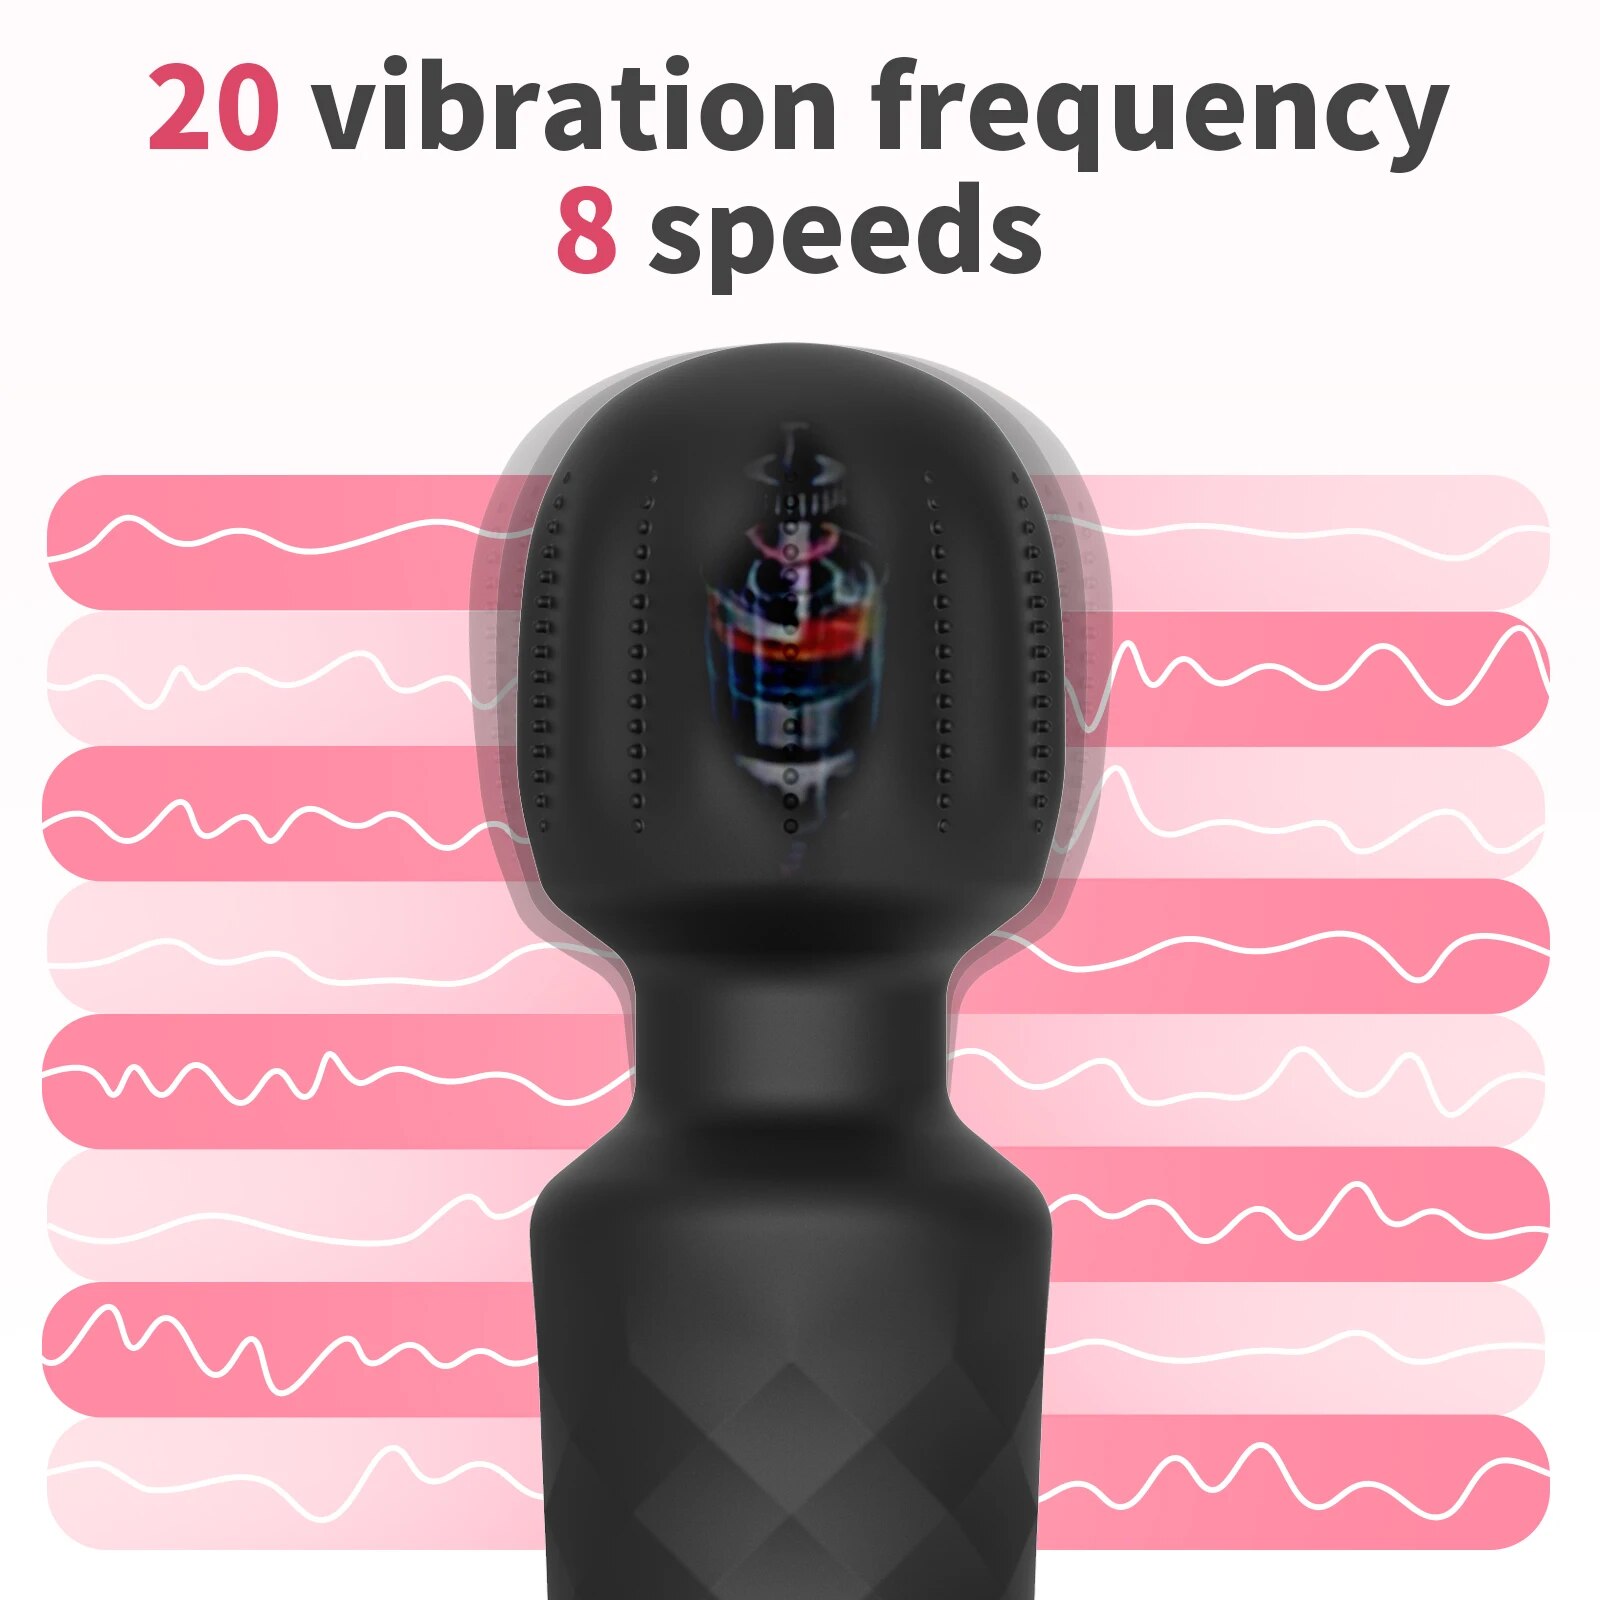 Giá sỉ Chày rung tình yêu Safiman Vibrator Magic Wand gai nổi kích thích điểm G chính hãng